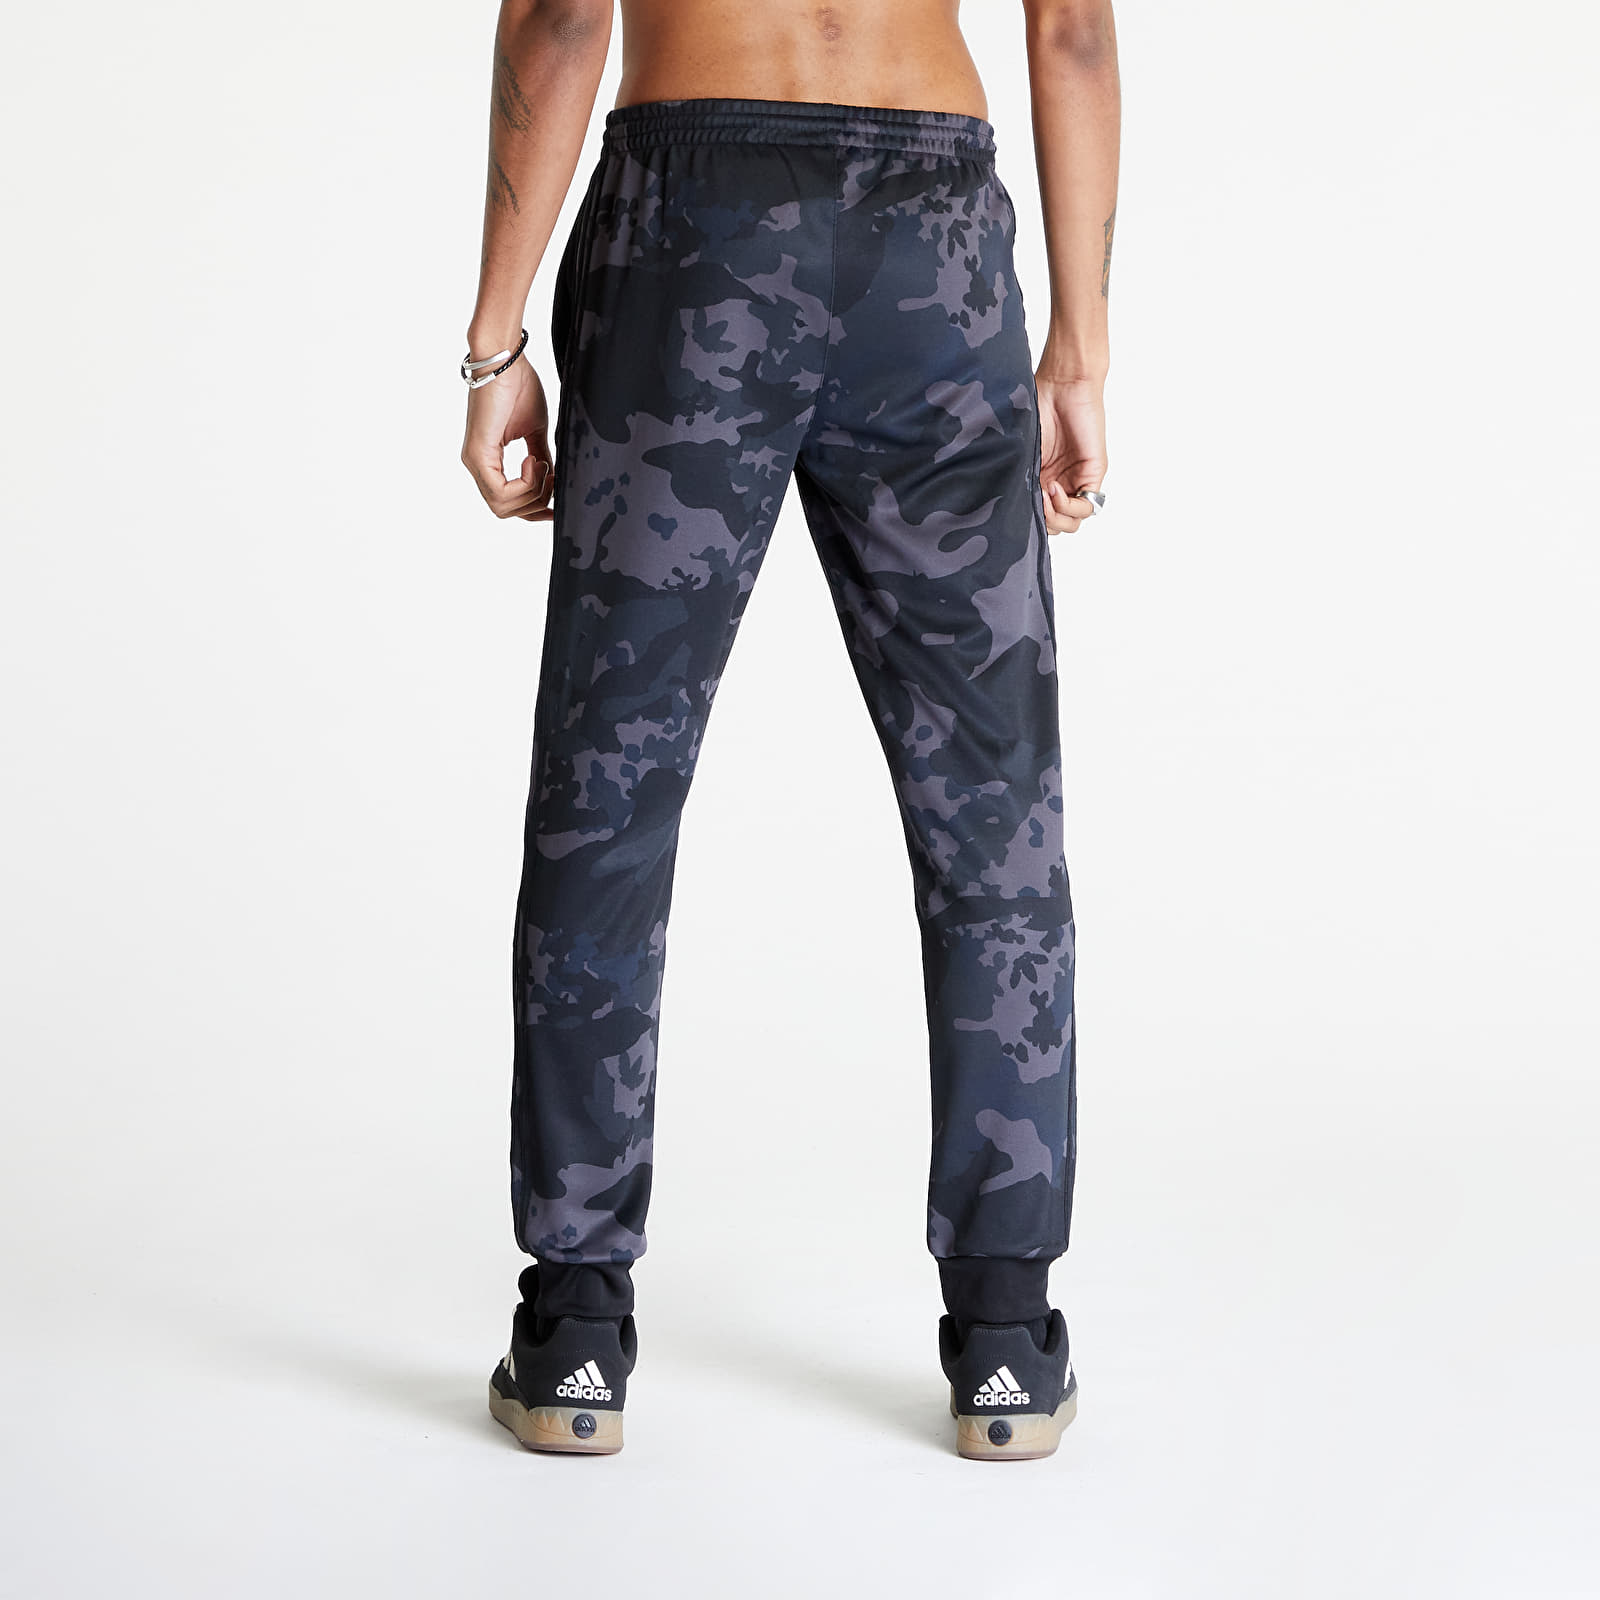 adidas Originals Men's Camo Tracksuit Pants Black/Multicolor, S :  Amazon.in: Fashion